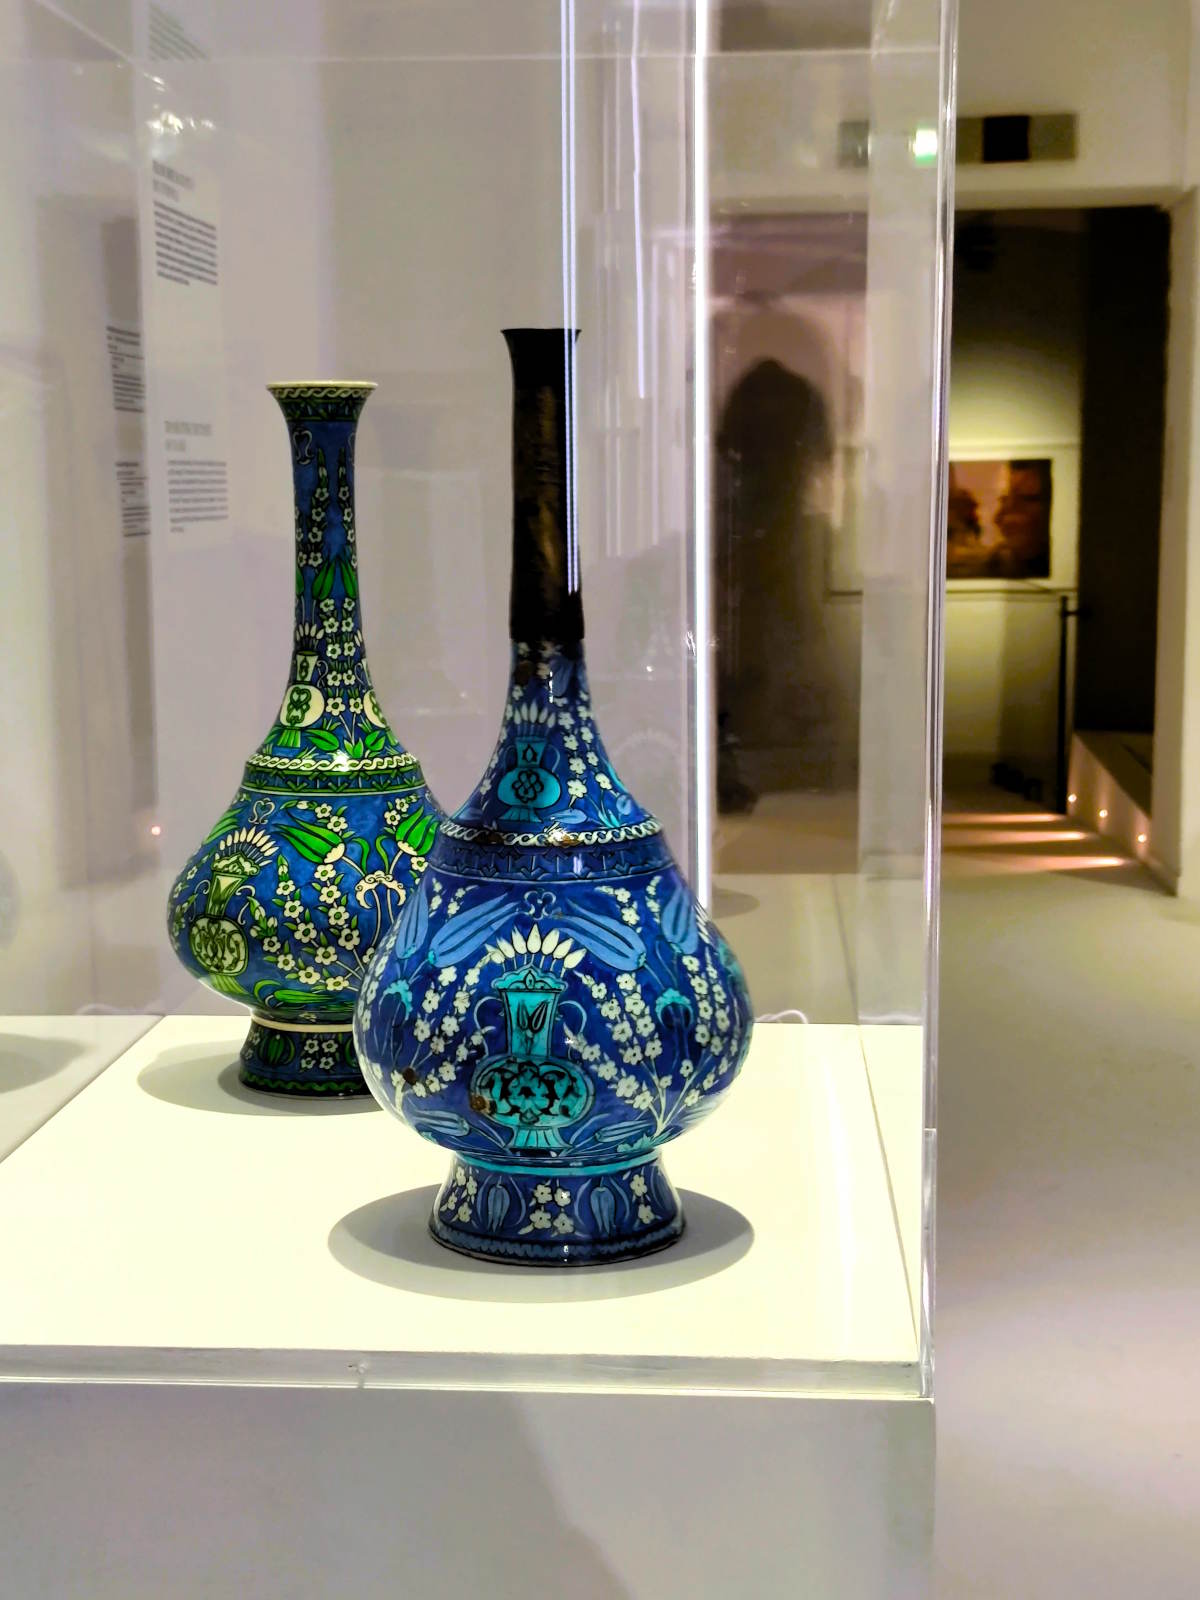 Museo D'Arte Orientale di Torino: Due bottiglie provenienti dall'area del bacino del Mediterraneo nella Mostra temporanea “Tradu/izioni d’Eurasia”